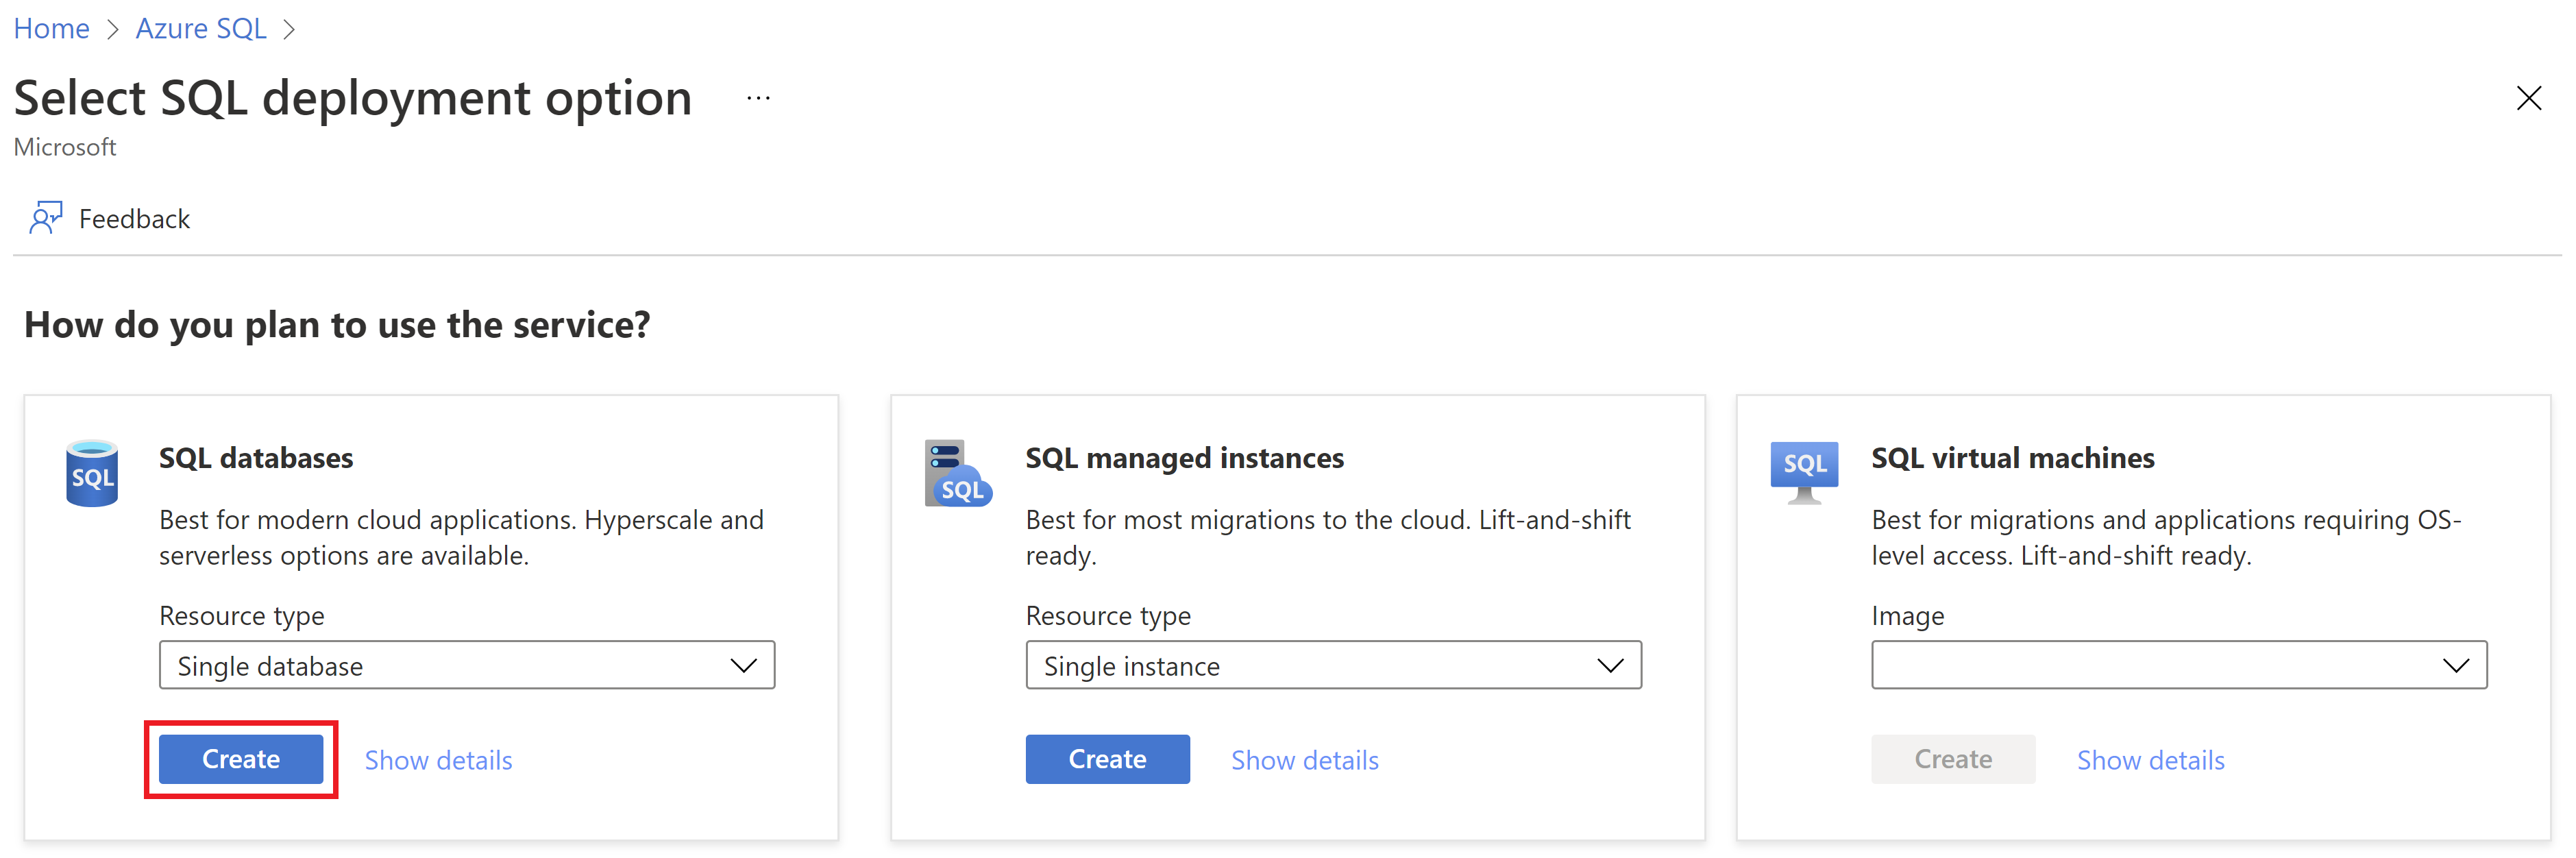 Снимок экрана: страница портал Azure, выберите страницу развертывания SQL Azure, создав новую отдельную базу данных.